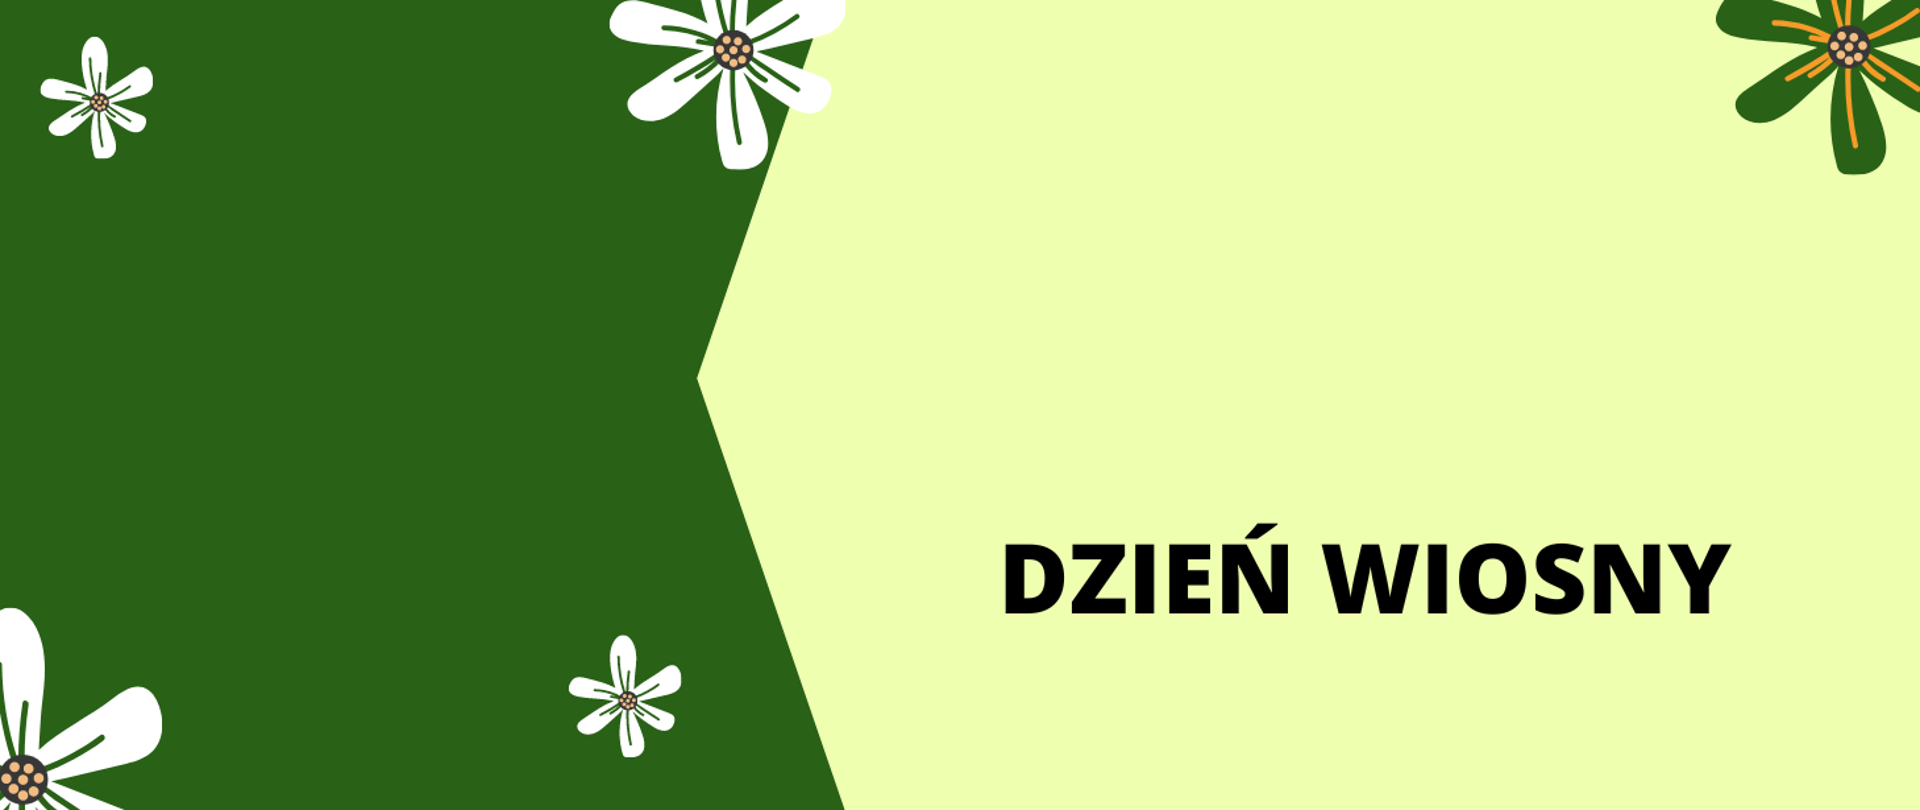 Obraz w kolorach zielonym i beżowym zawiera elementy graficzne w postaci kwiatów oraz napis "Dzień WIosny"